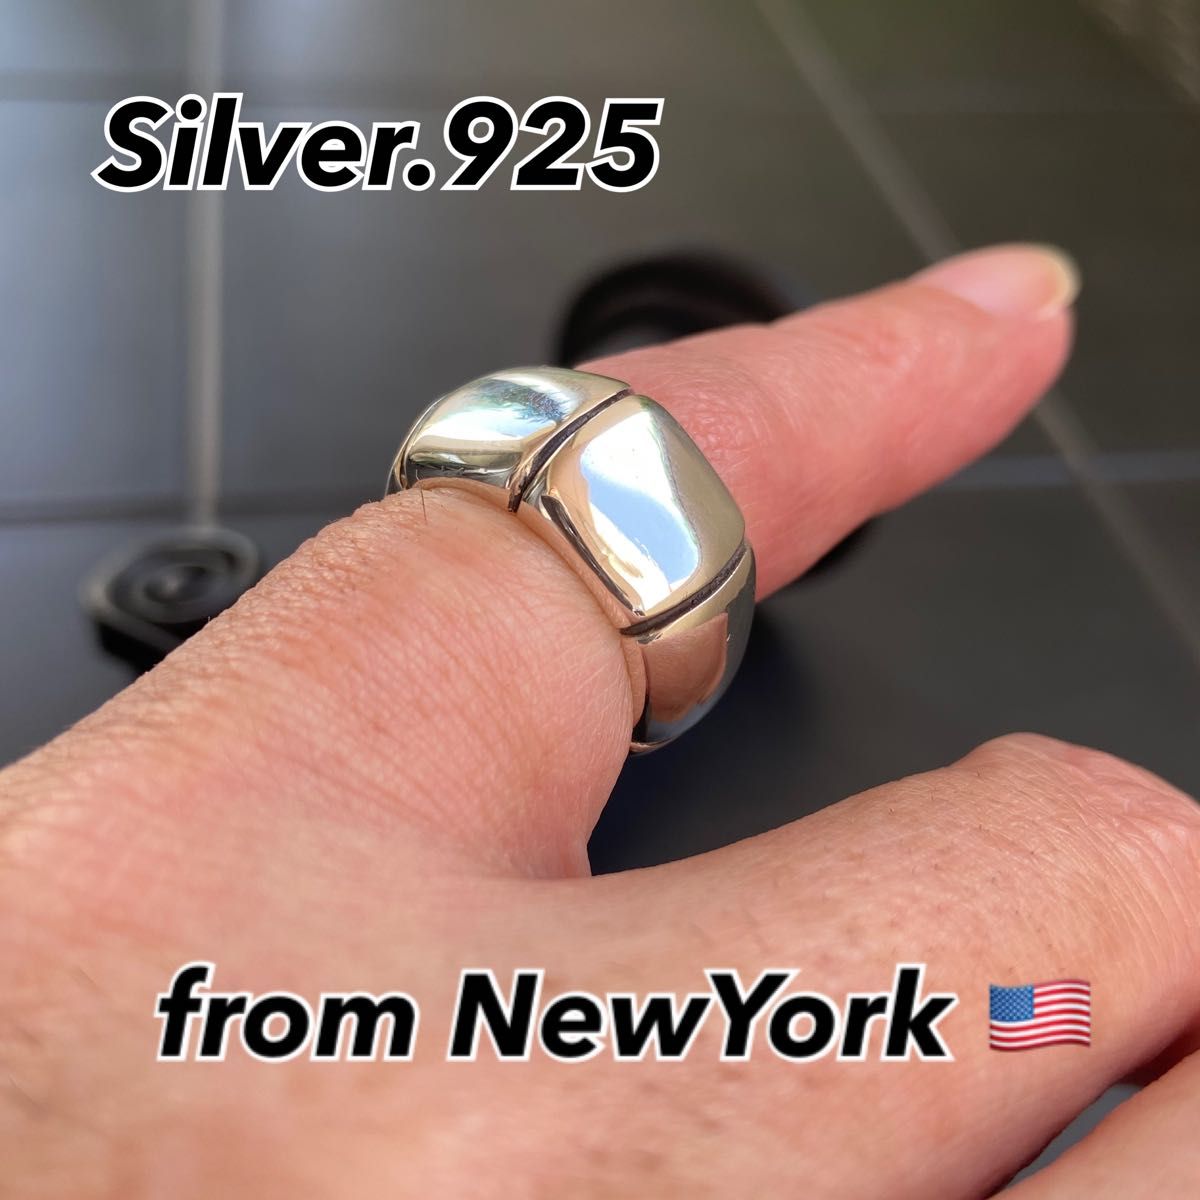 NY SOHO発 シルバーリング【17号】SILVER925 ユニセックス 指輪 アクセサリー シルバー925リング プレゼントに